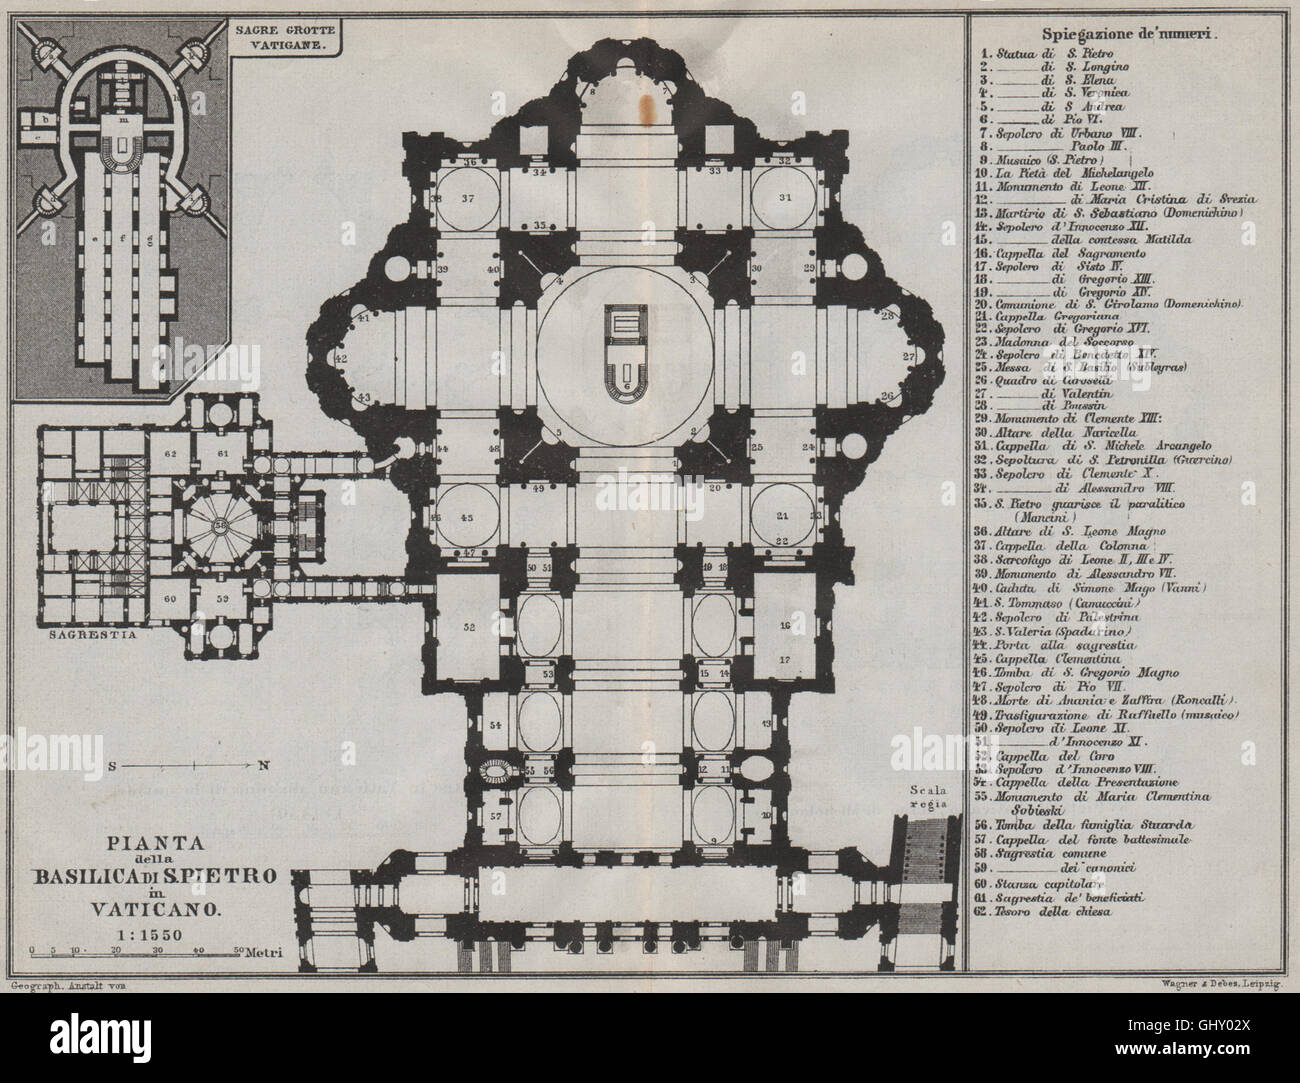 St Pierre de Rome. Basilica di San Pietro in Vaticano. Pianta plan du salon 1909 Plan du site Banque D'Images